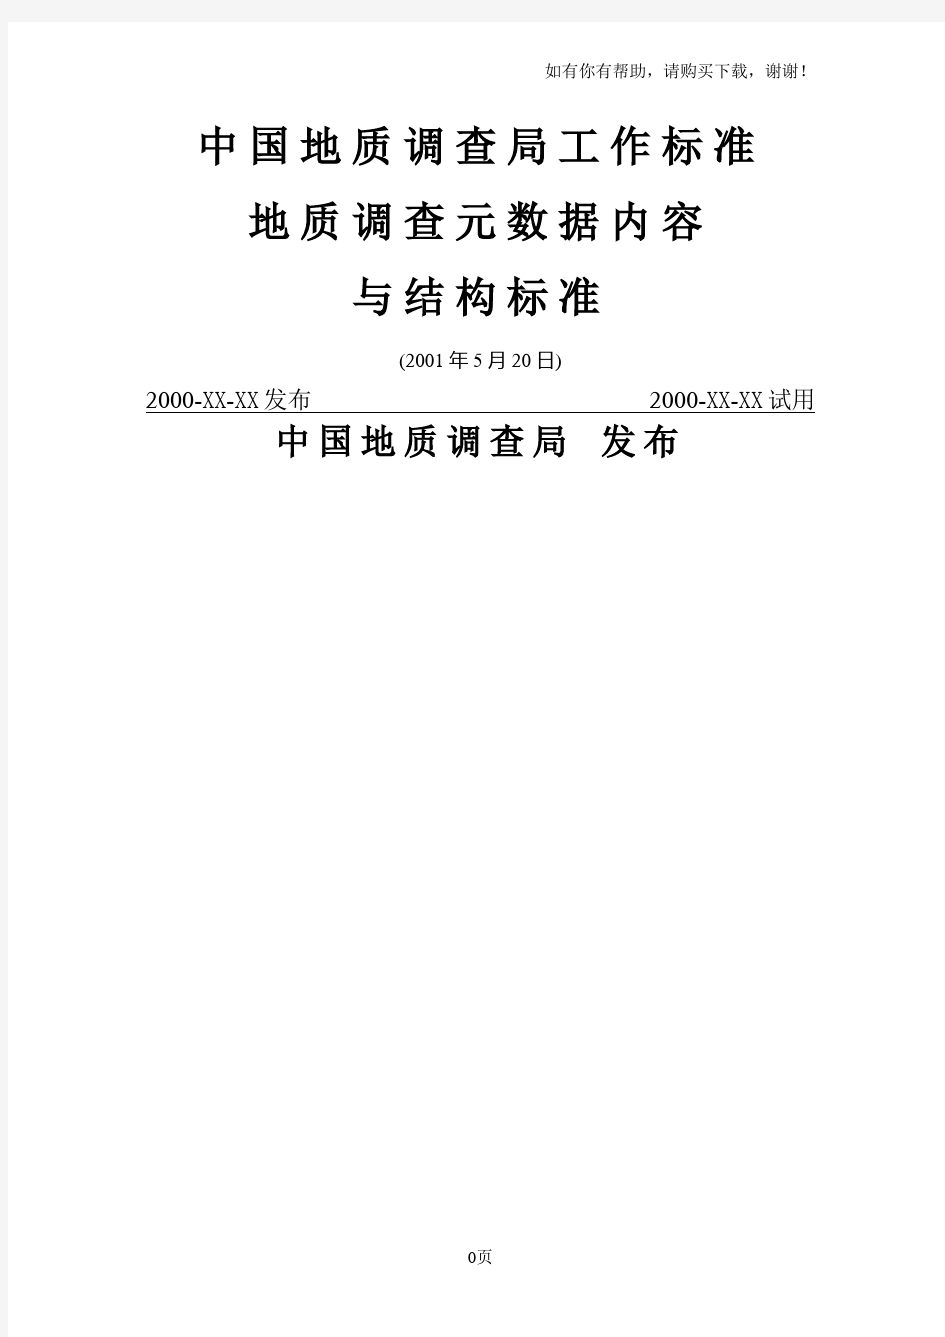 中国地质调查局工作标准